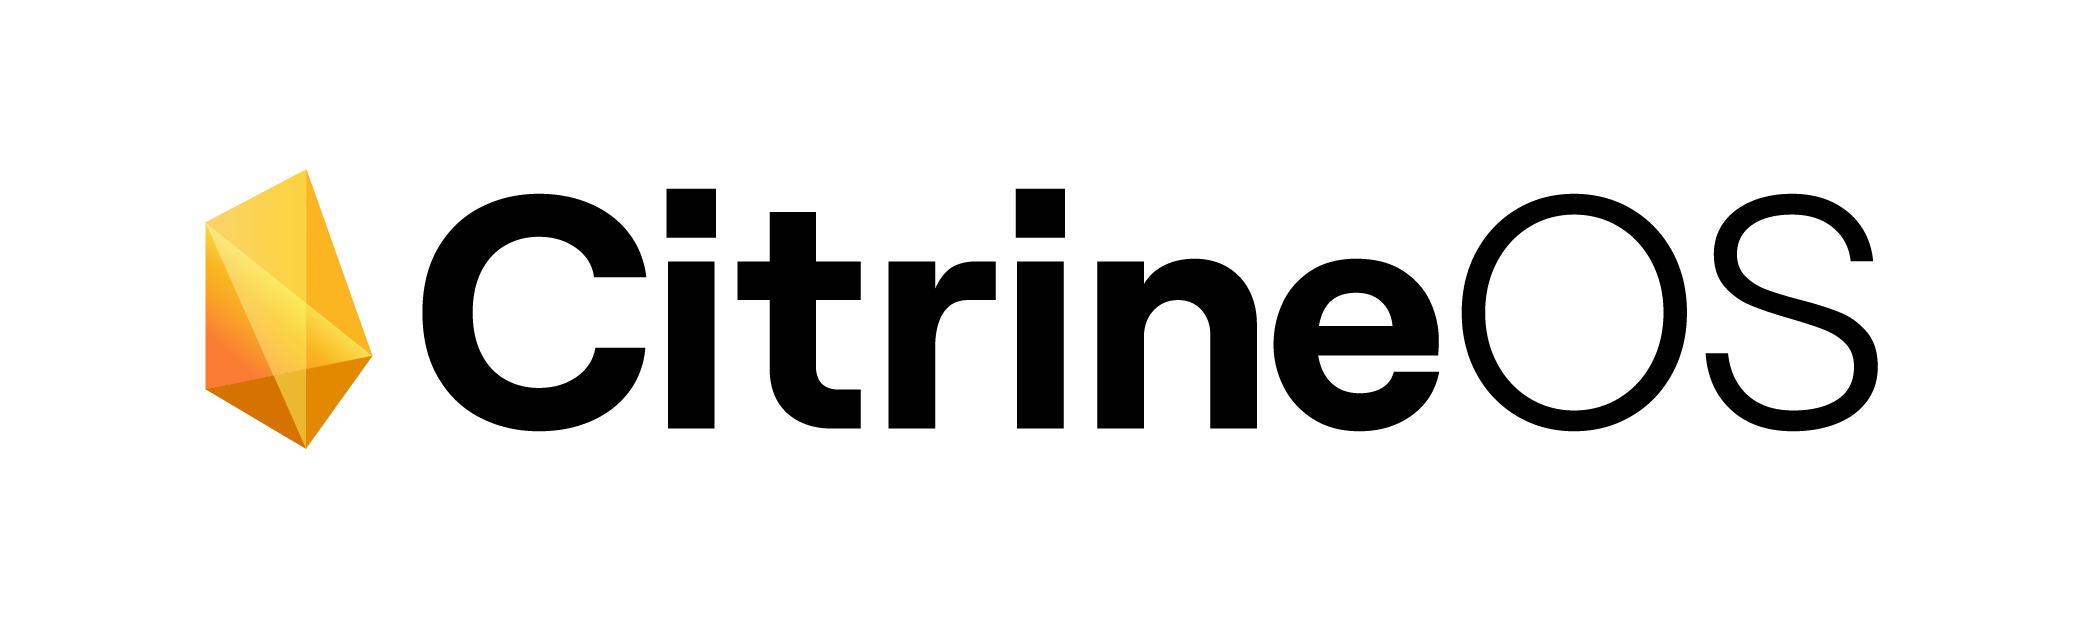 CitrineOS Logo